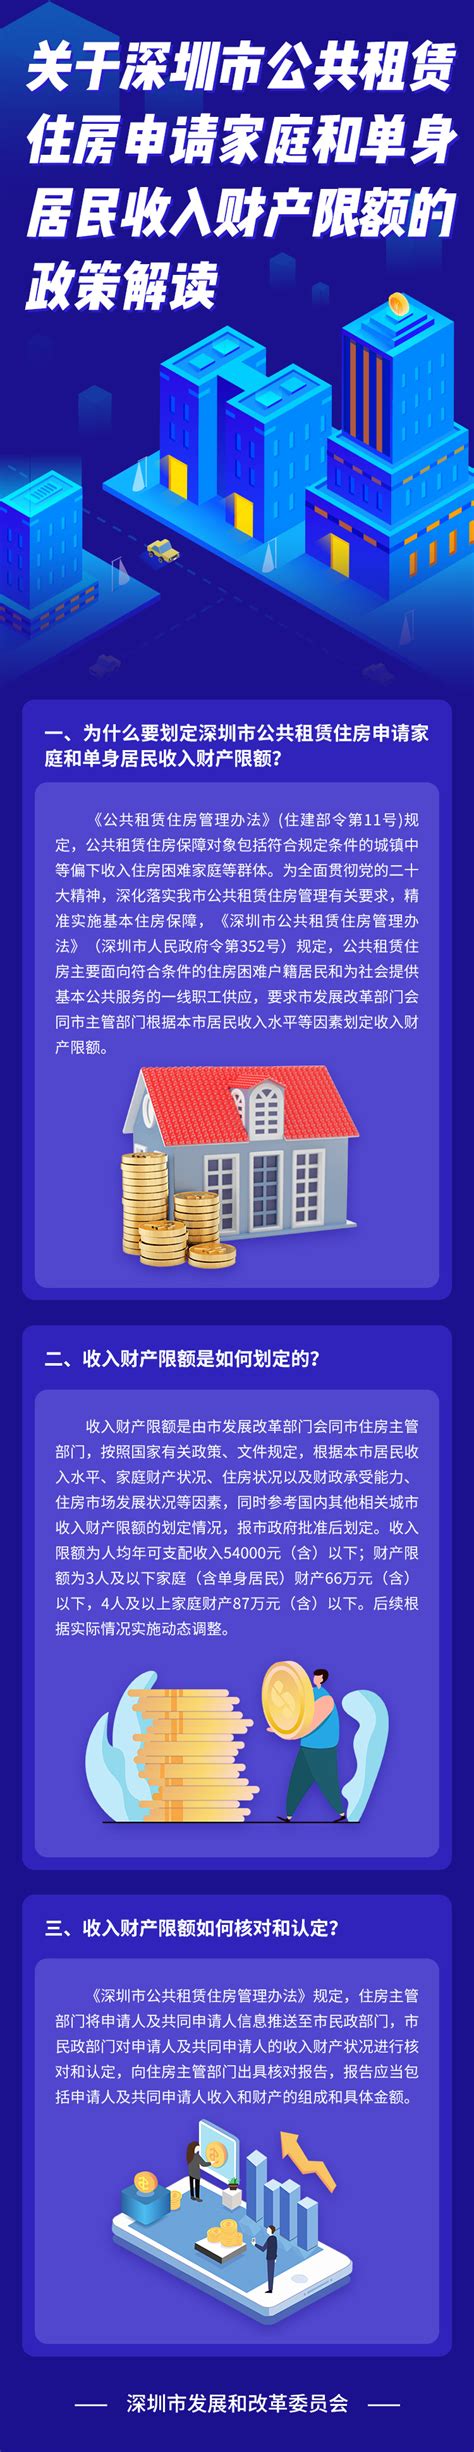 深圳市保障性住房申请指南